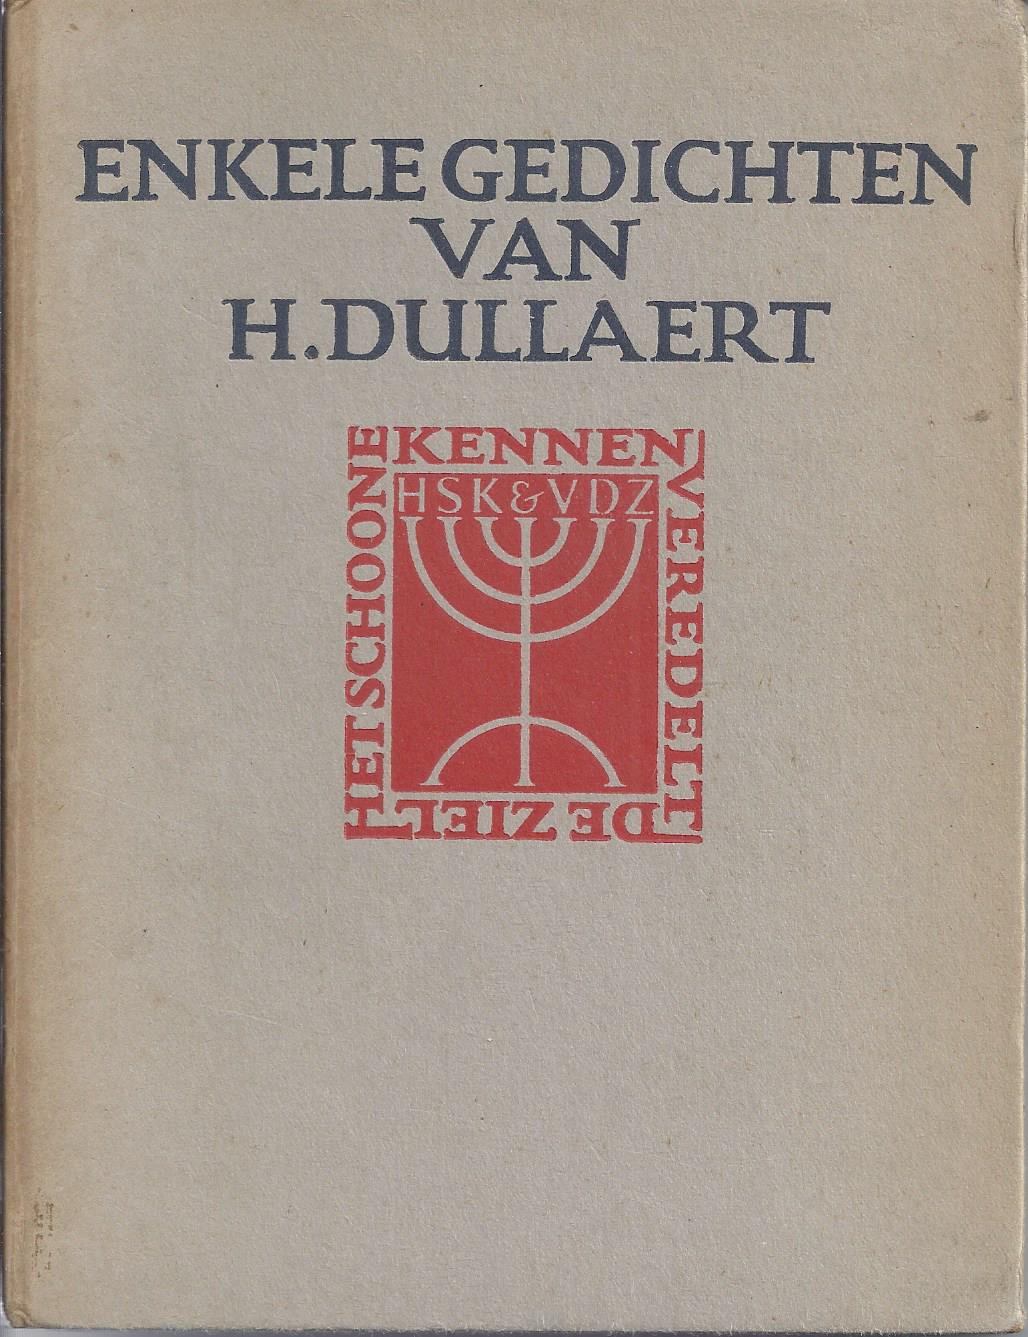 DULLAART, HEIMAN, (1636-1684) DE GEDICHTEN ZIJN GEKOZEN DOOR J.GRESHOFF - Enkele Gedichten